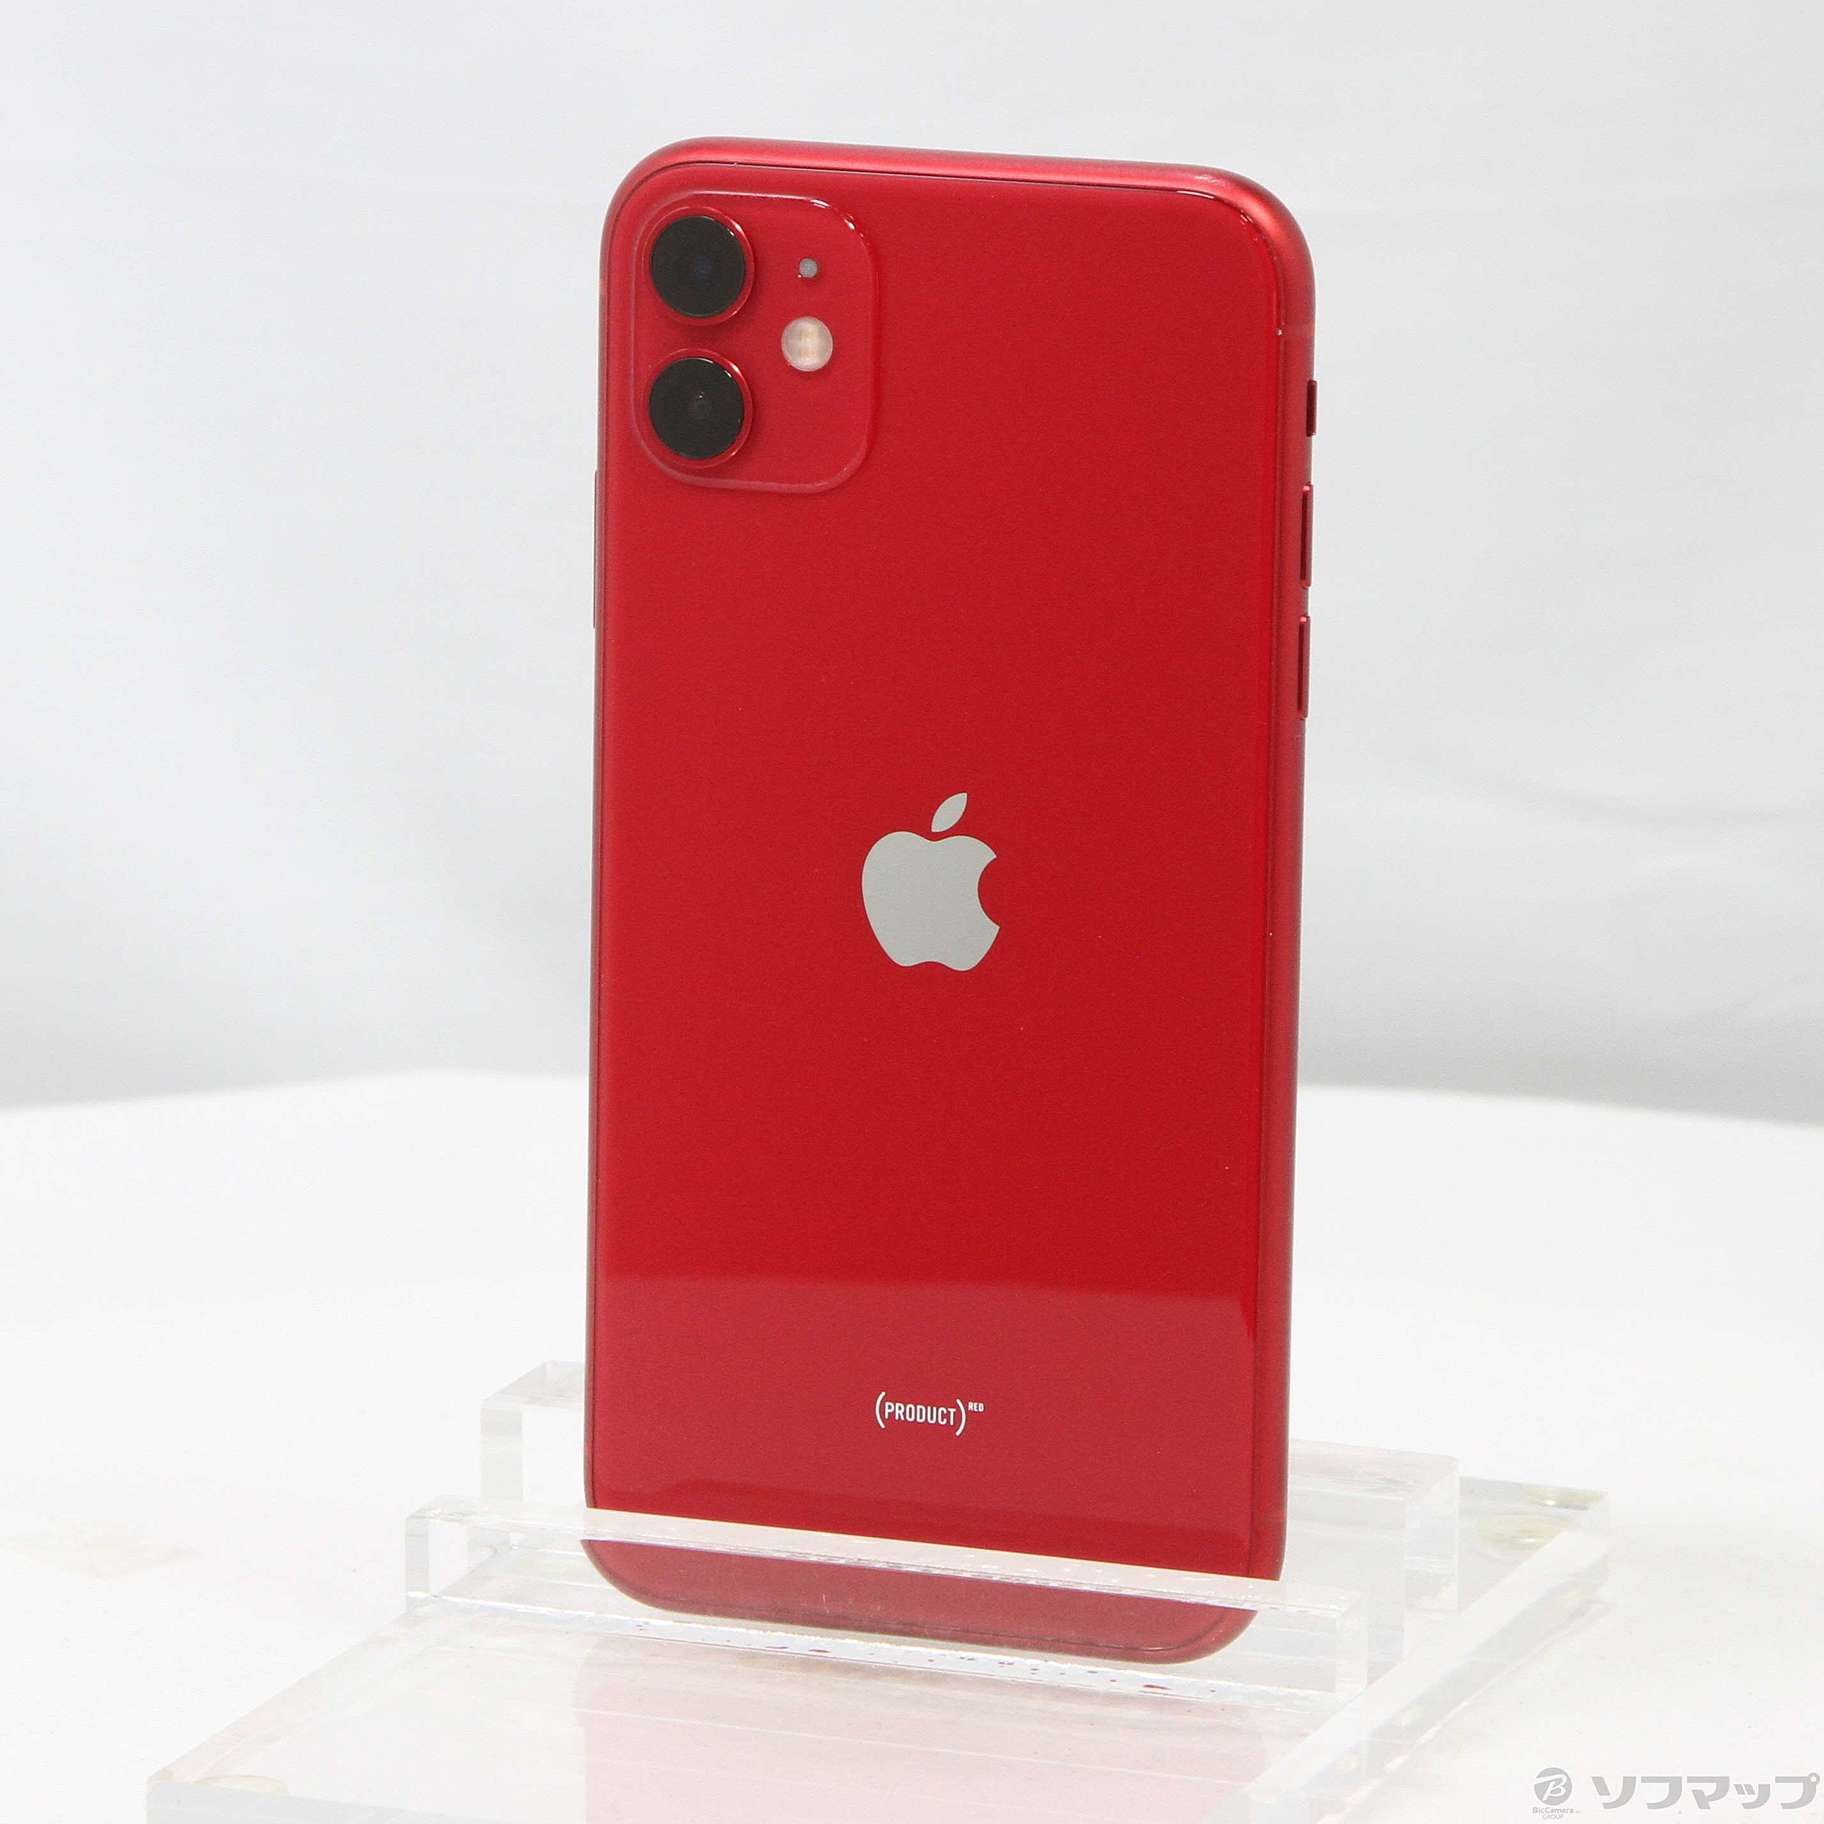 iPhone 11 256GB Apple版 SIMフリー 新品 未使用 赤 プロダクト レッド